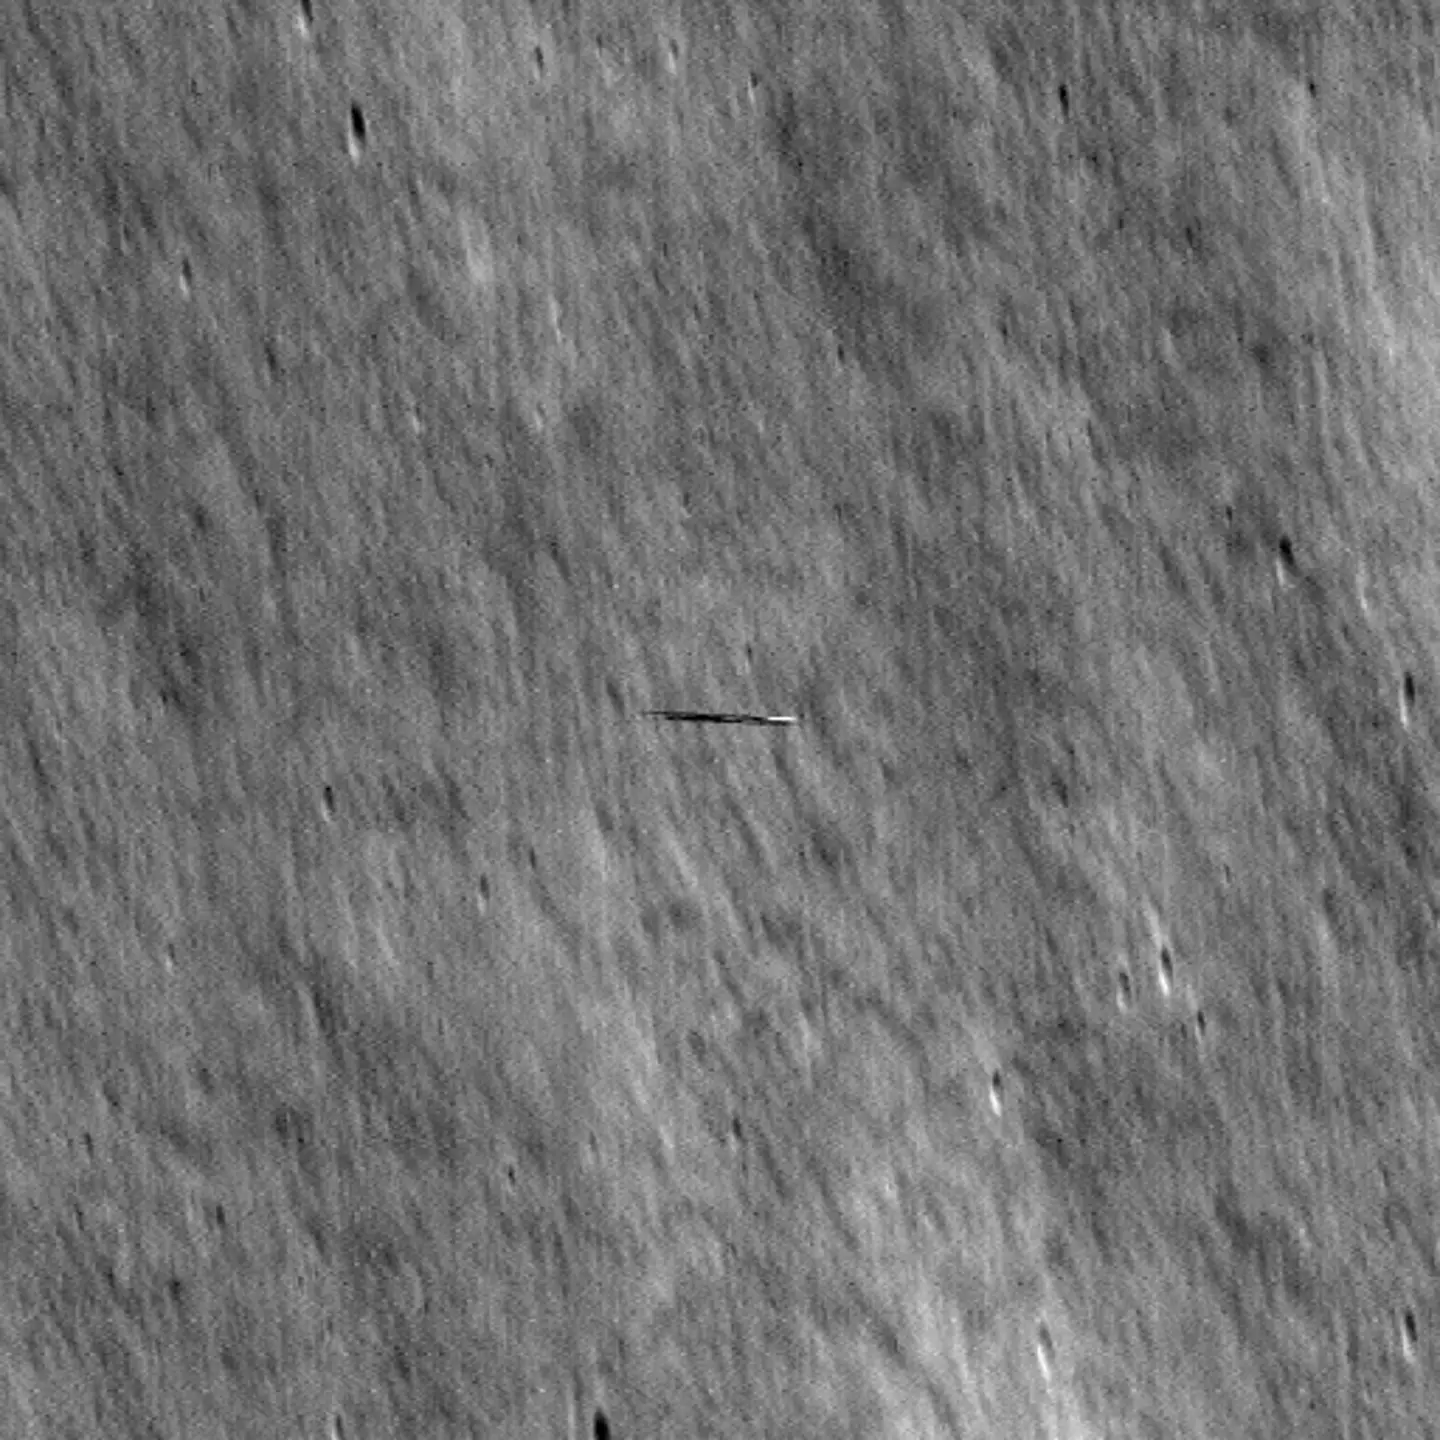 NASA captura imagens misteriosas de objeto orbitando a Lua